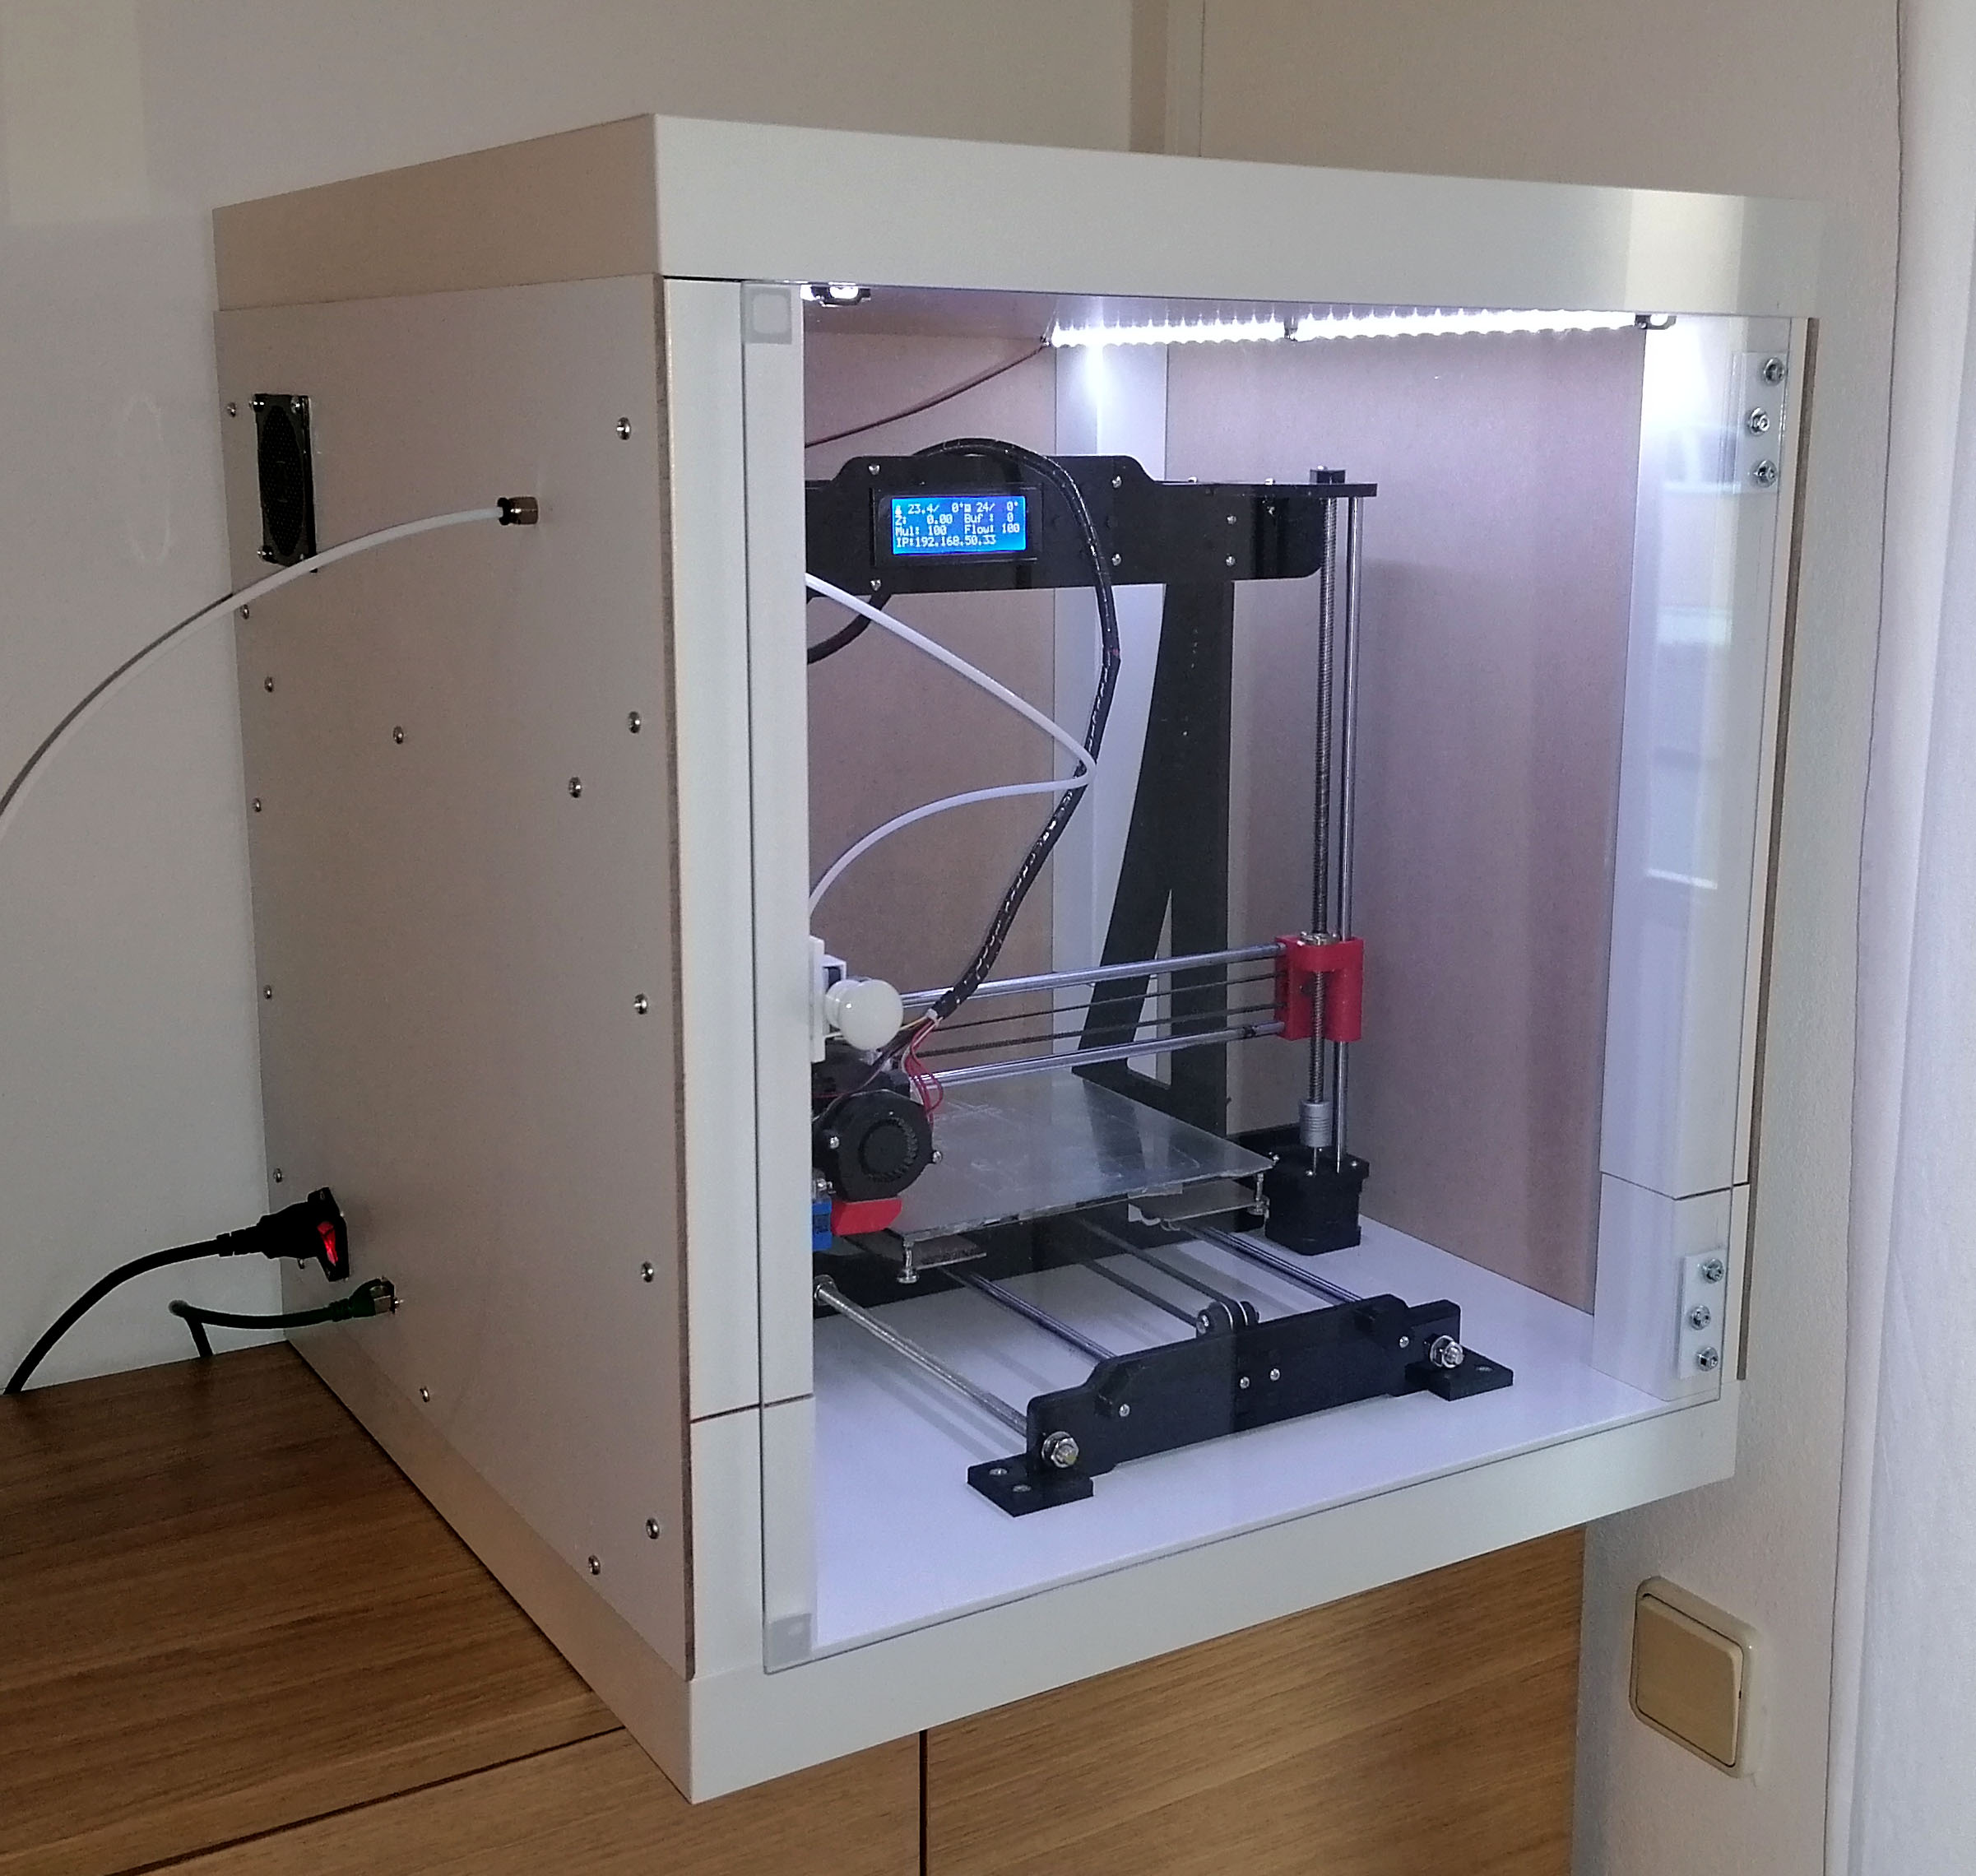 3D printer enclosure made of IKEA LACK tables MatP's